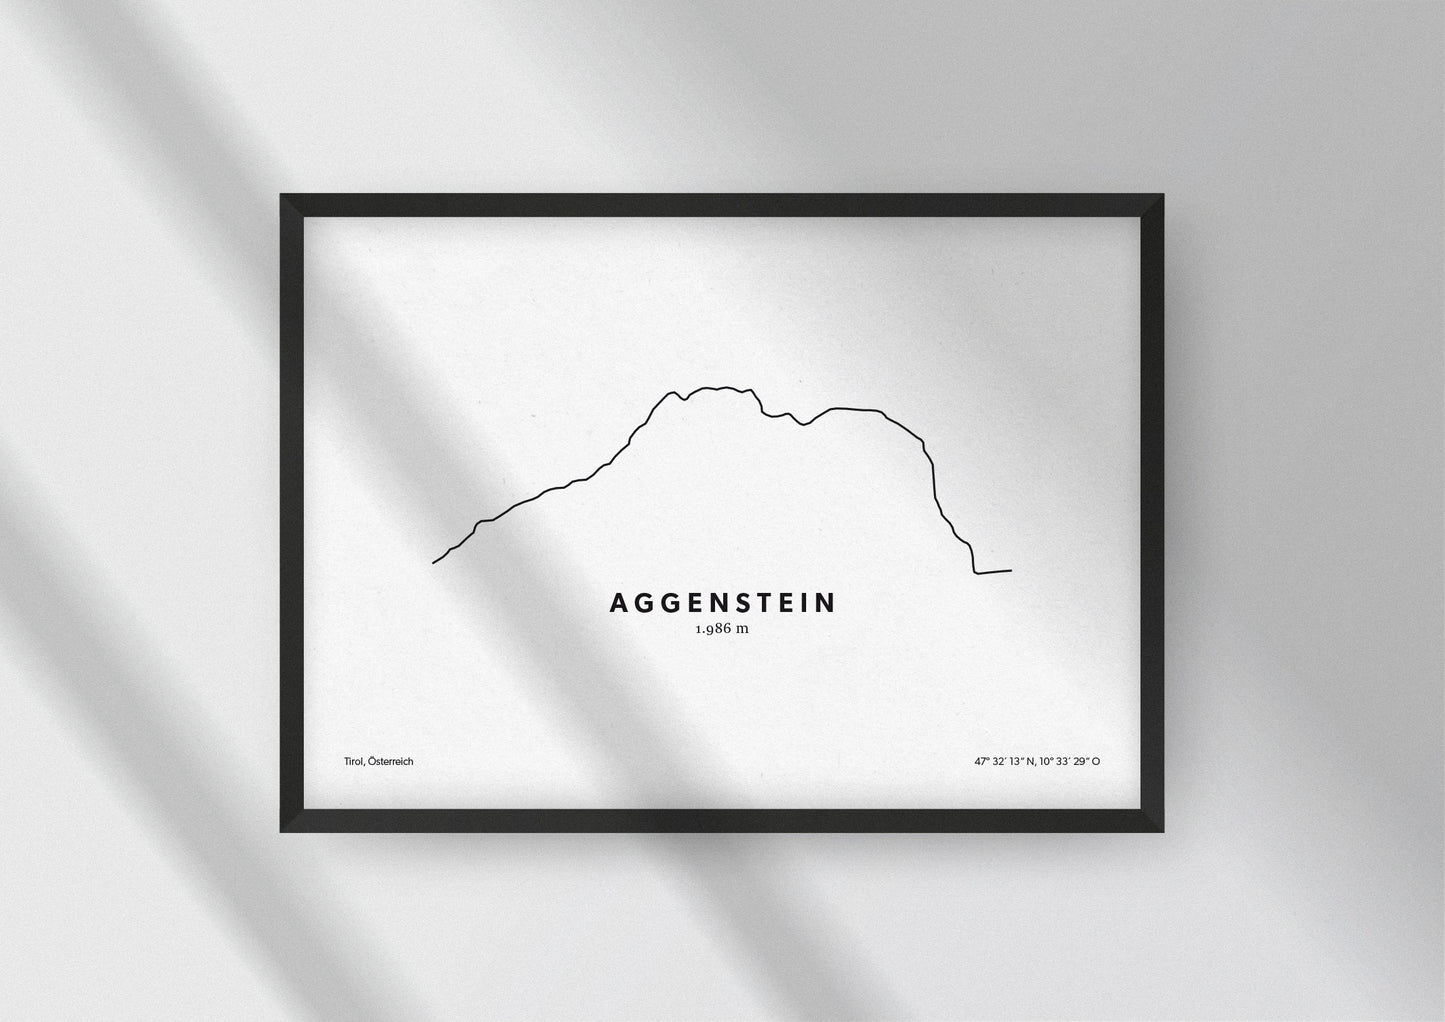 Minimalistische Illustration des Aggenstein in Tirol, als stilvoller Einrichtungsgegenstand für Zuhause.